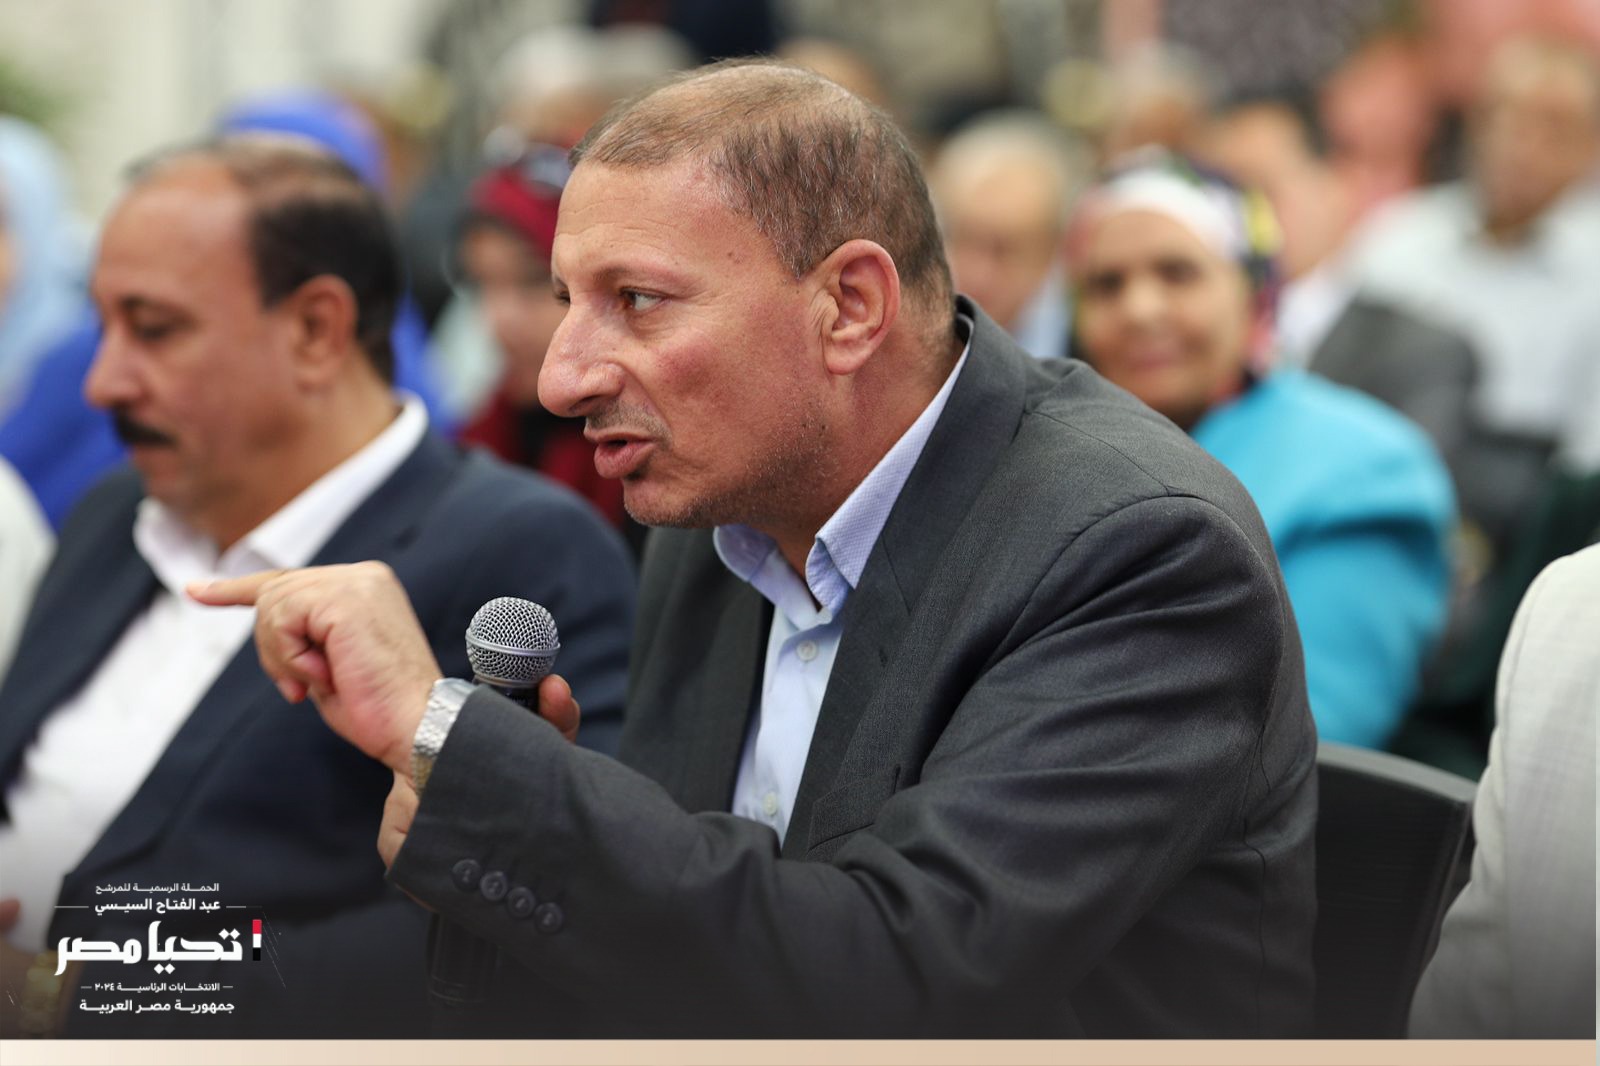 الرسمية للمرشح عبد الفتاح السيسي تستقبل وفد نقابة العاملين بالزراعة والري والصيد واستصلاح الأراضي (16)